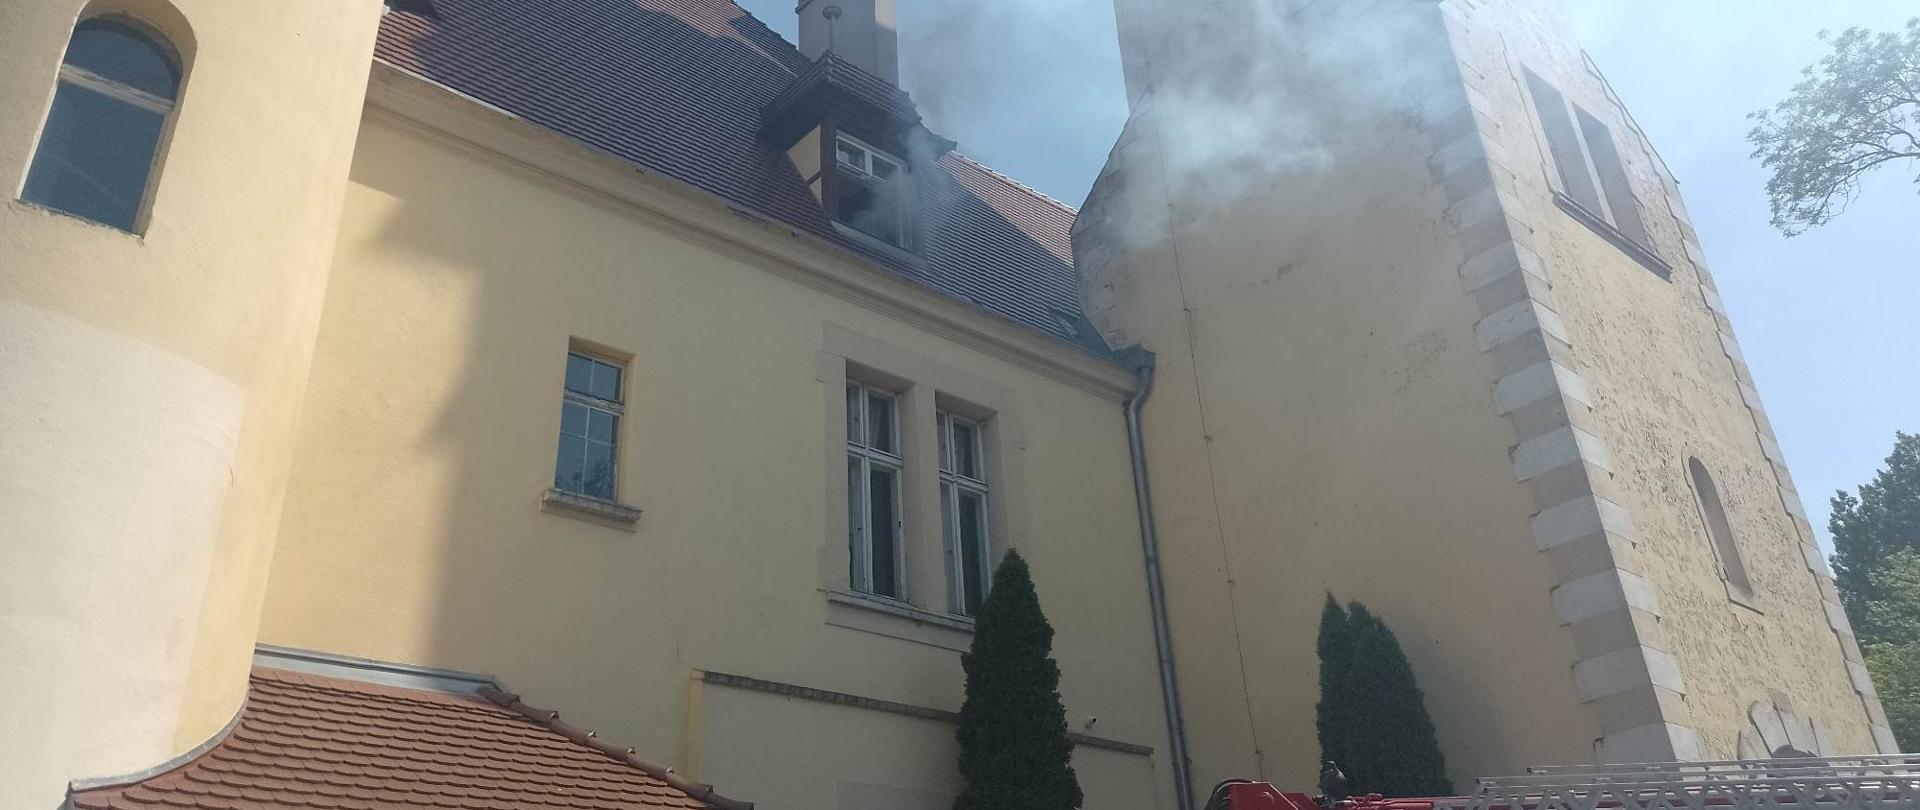 Zdjęcie przedstawia dym wydobywający się z otwartego okna na ostatniej kondygnacji budynku.